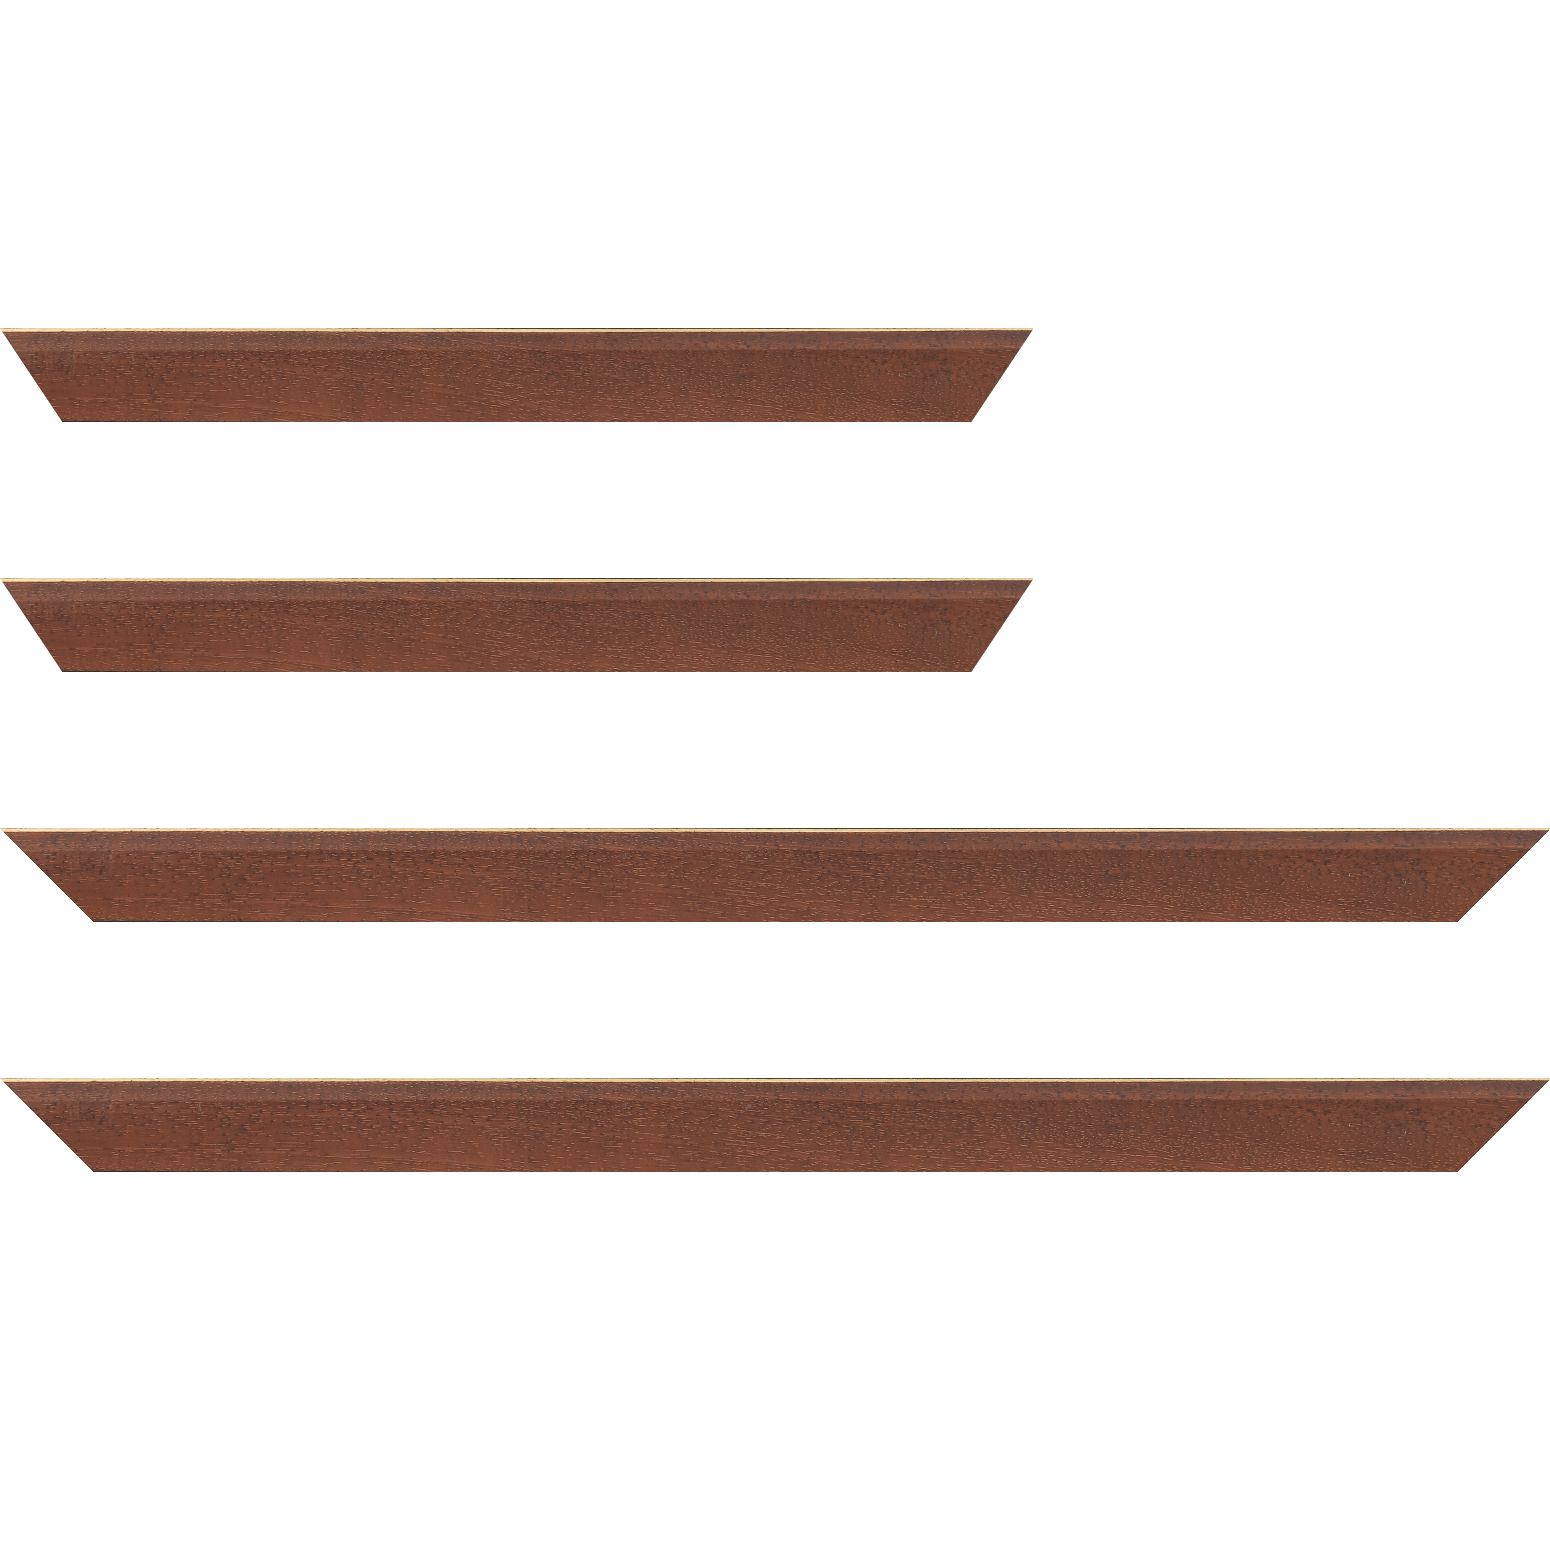 Baguette bois profil plat escalier largeur 3cm couleur marron miel satiné filet créme extérieur - 30x90